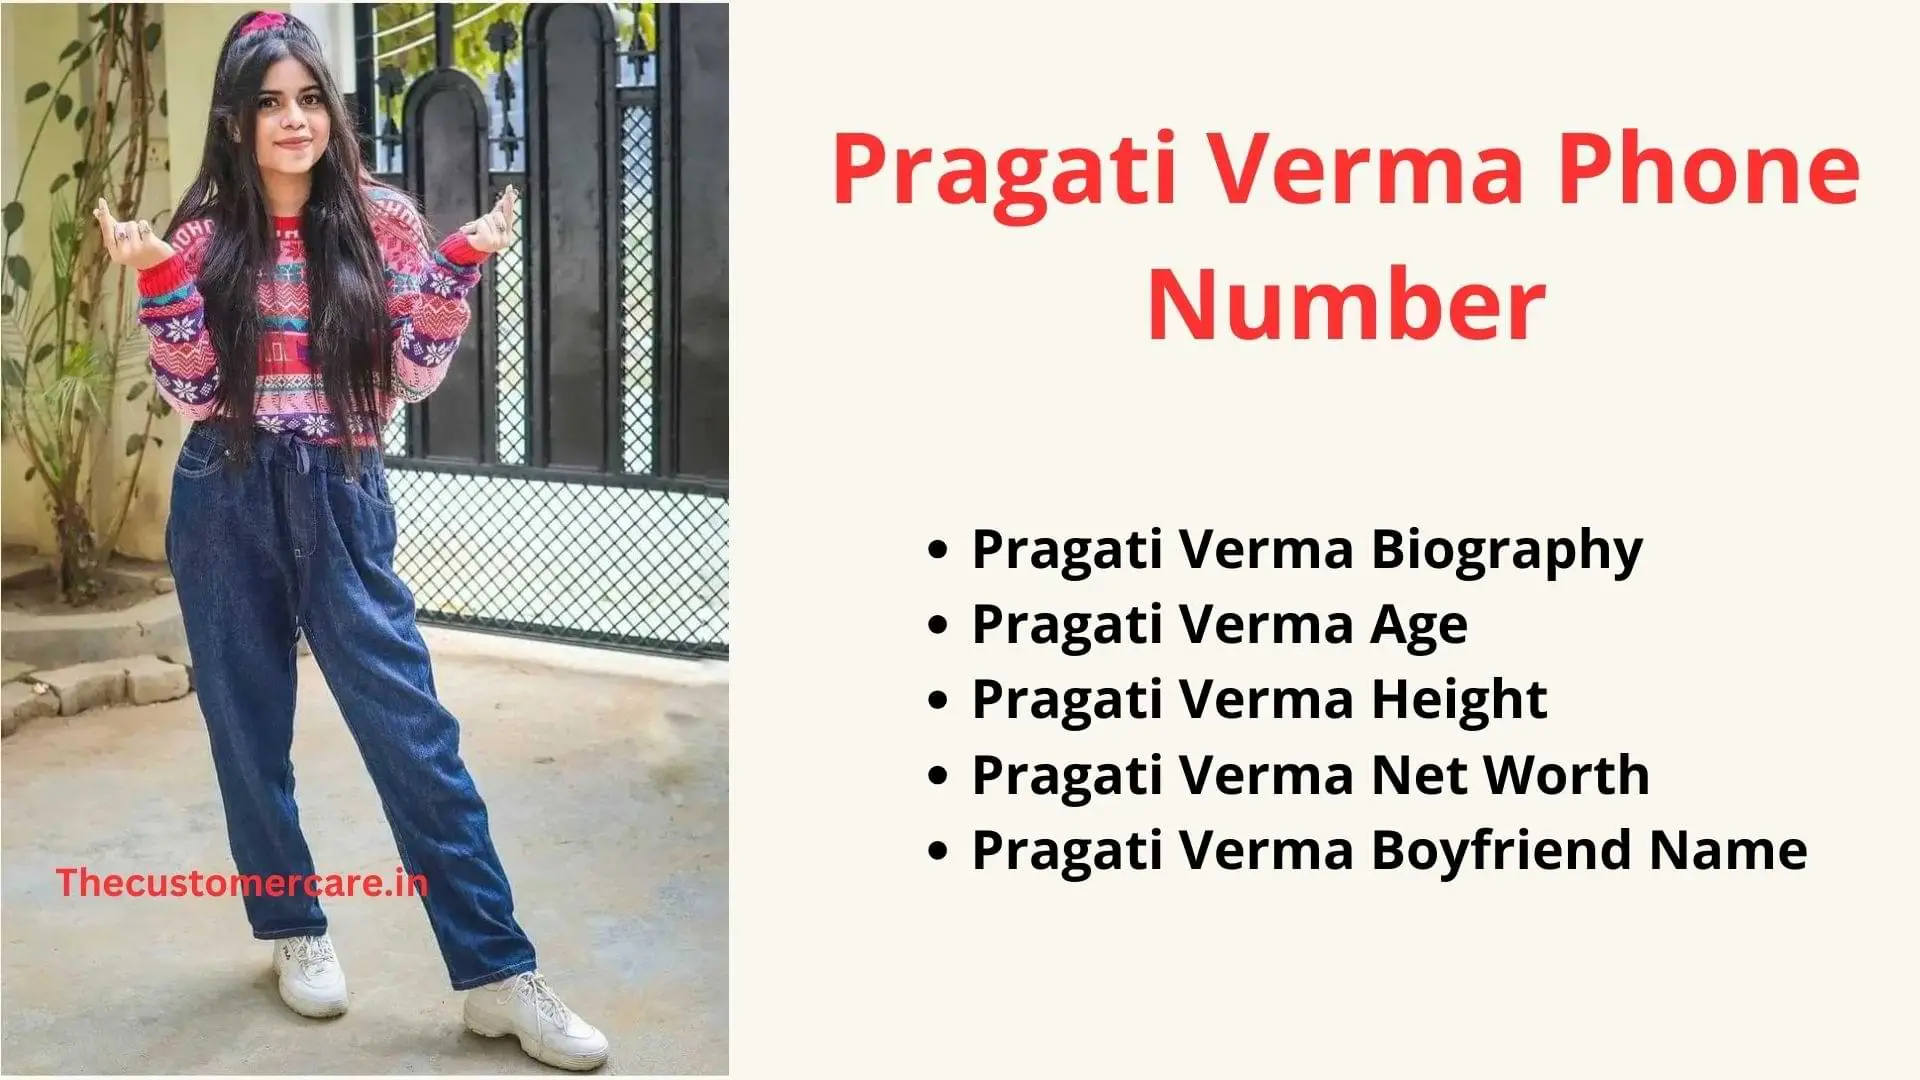 Pragati Verma Phone Number